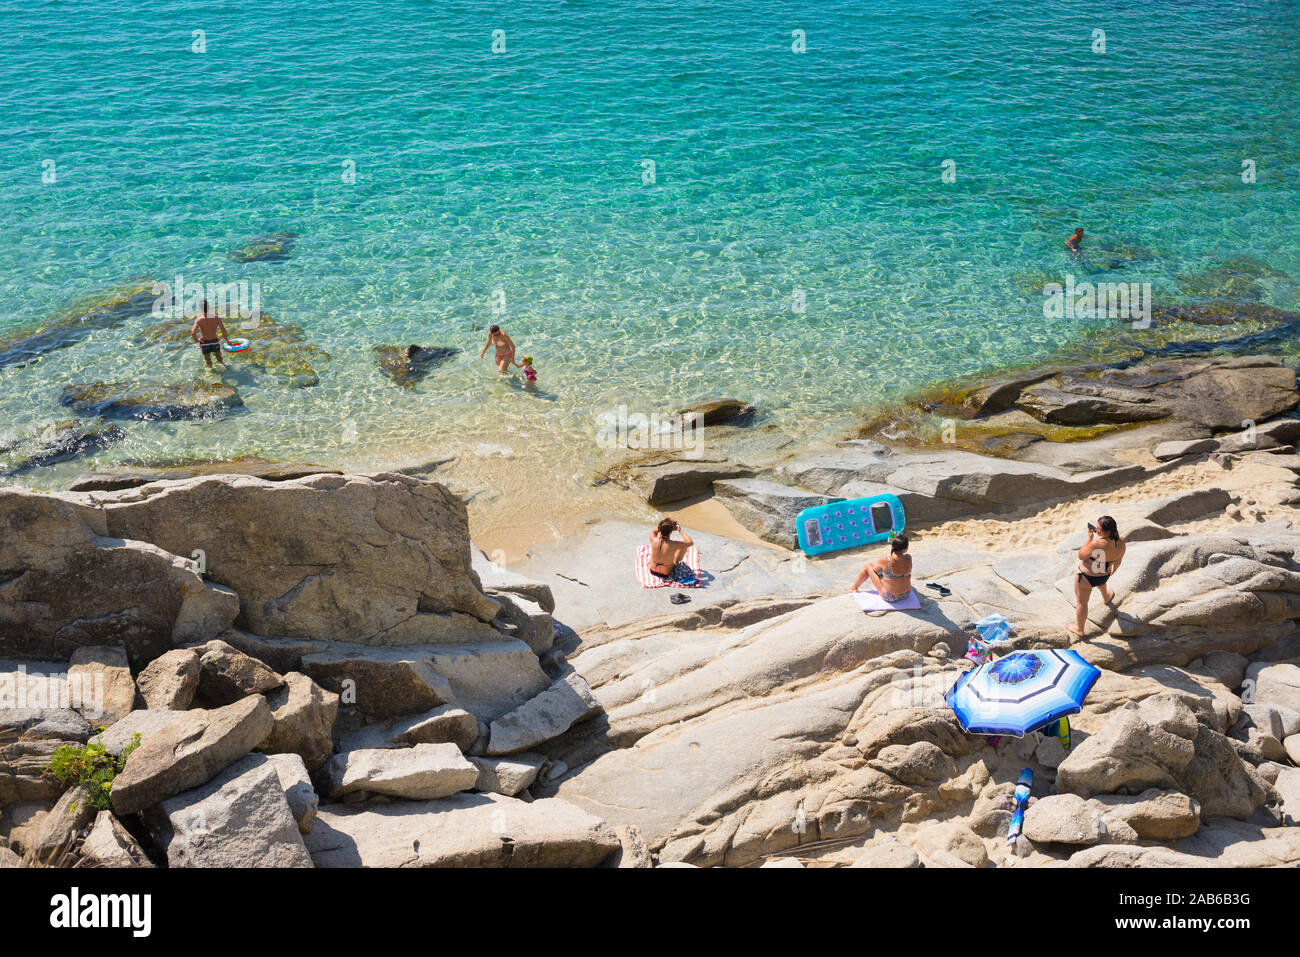 Cavoli, Isola d'Elba, Italy - September 2019: People on the famous Cavoli beach in the Isle of Elba, Tuscany Stock Photo